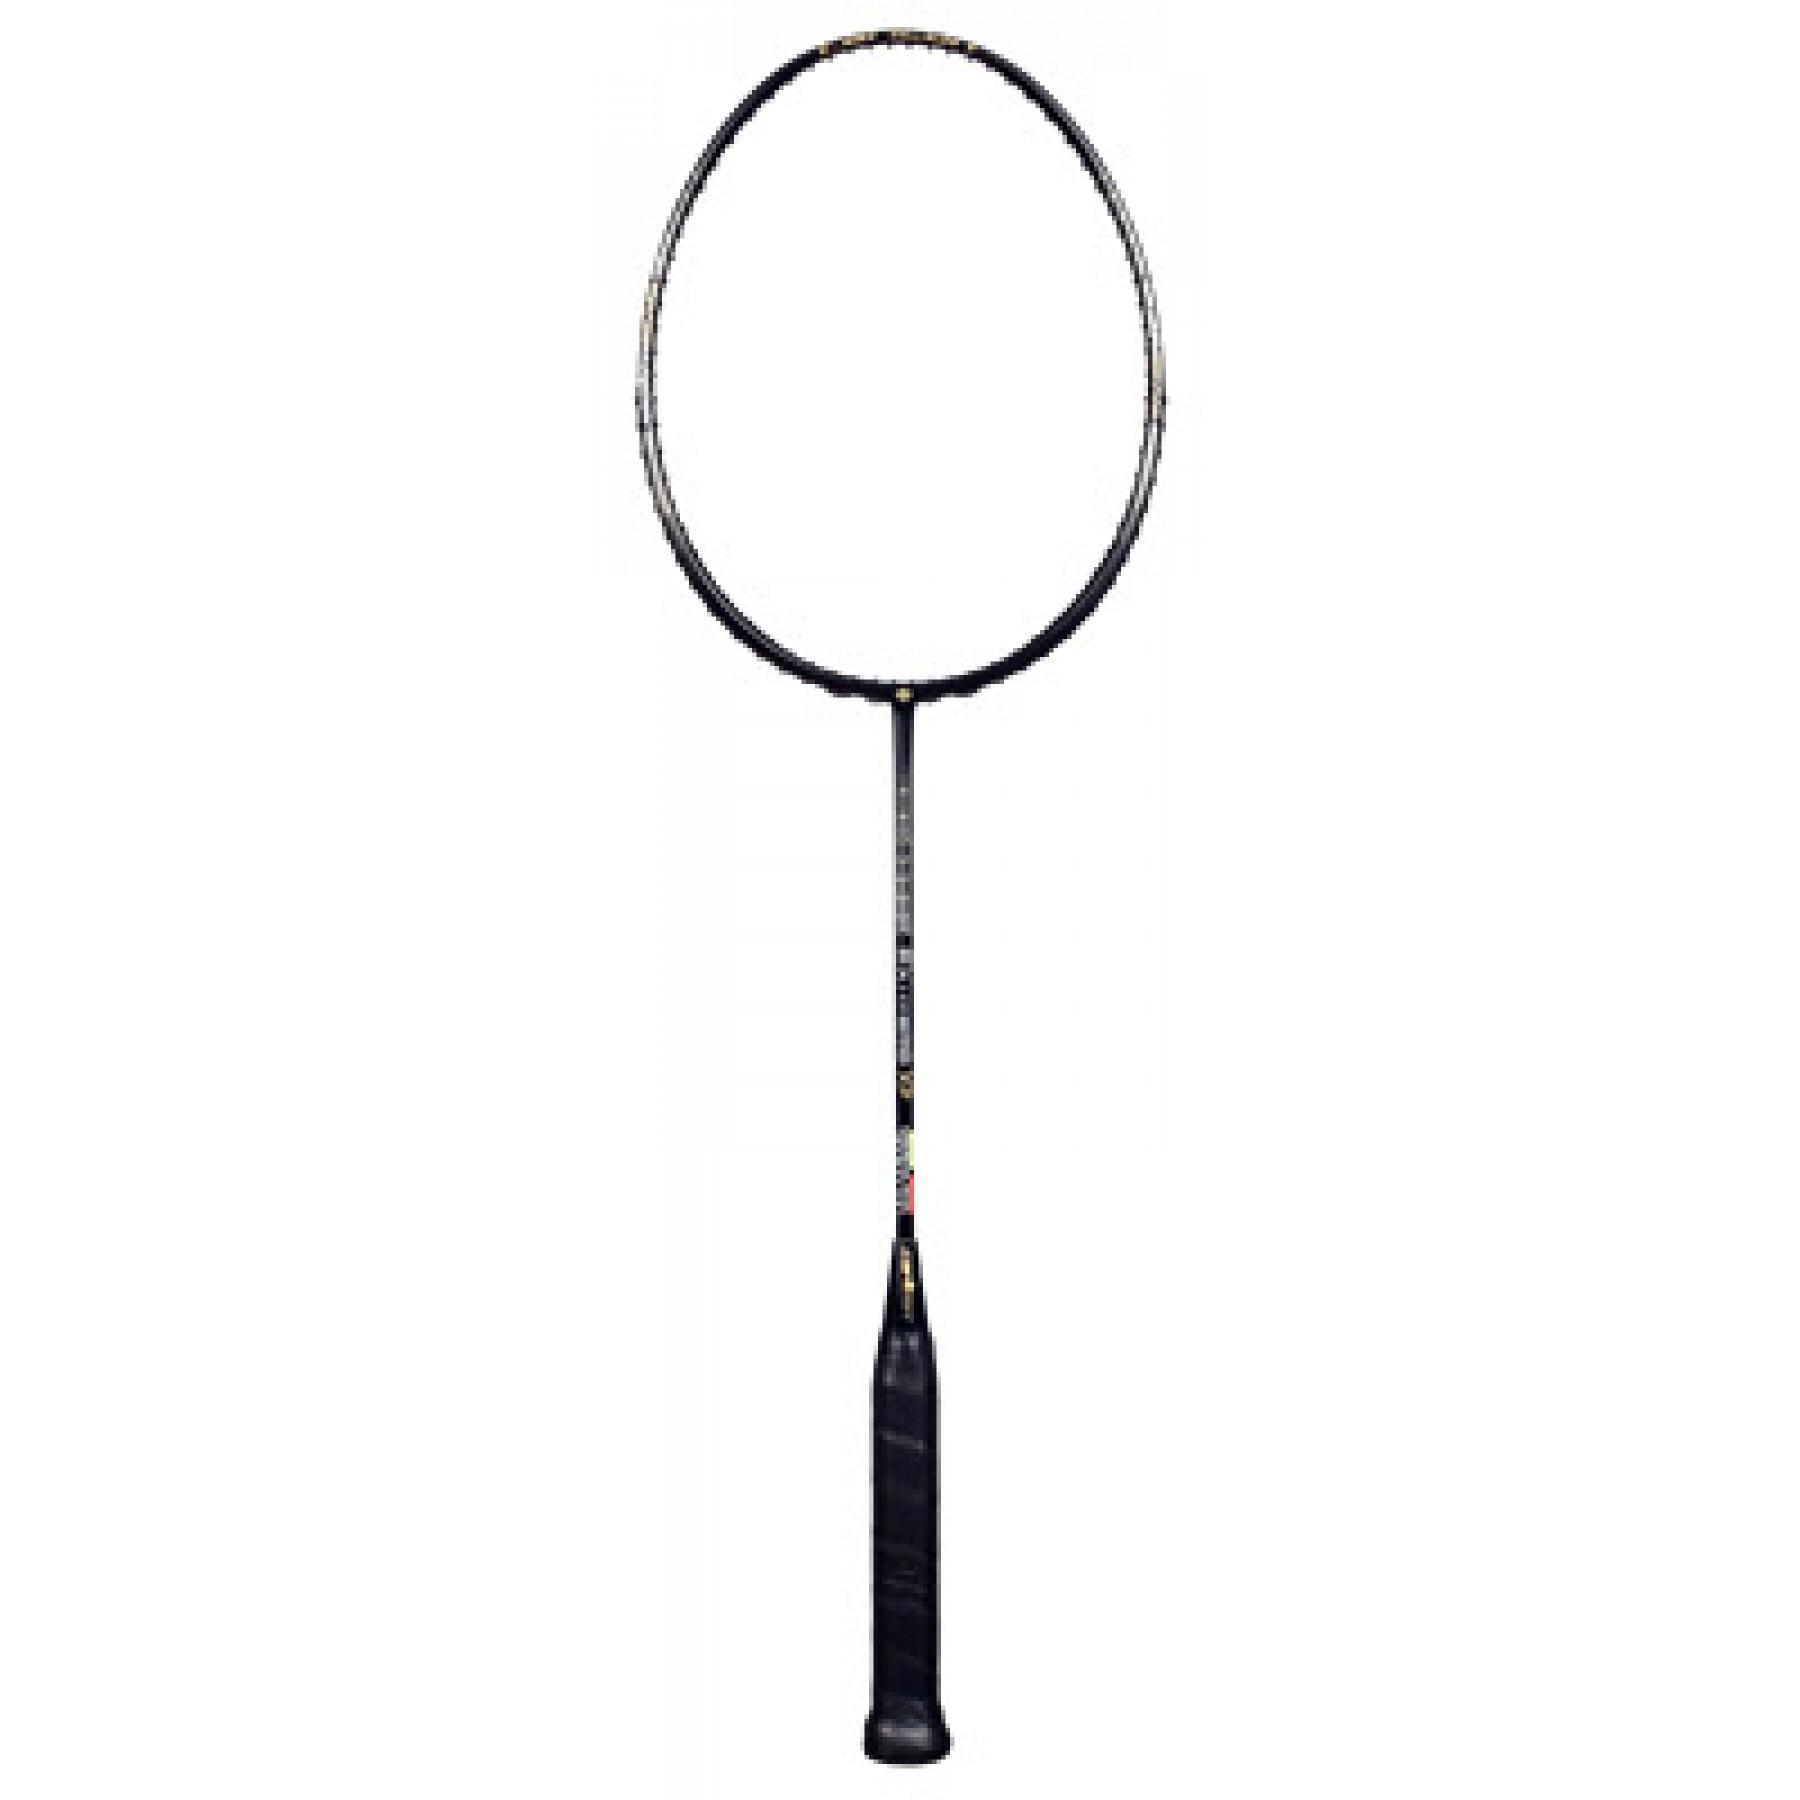 Badmintonschläger Dunlop Ex hybrid Xp